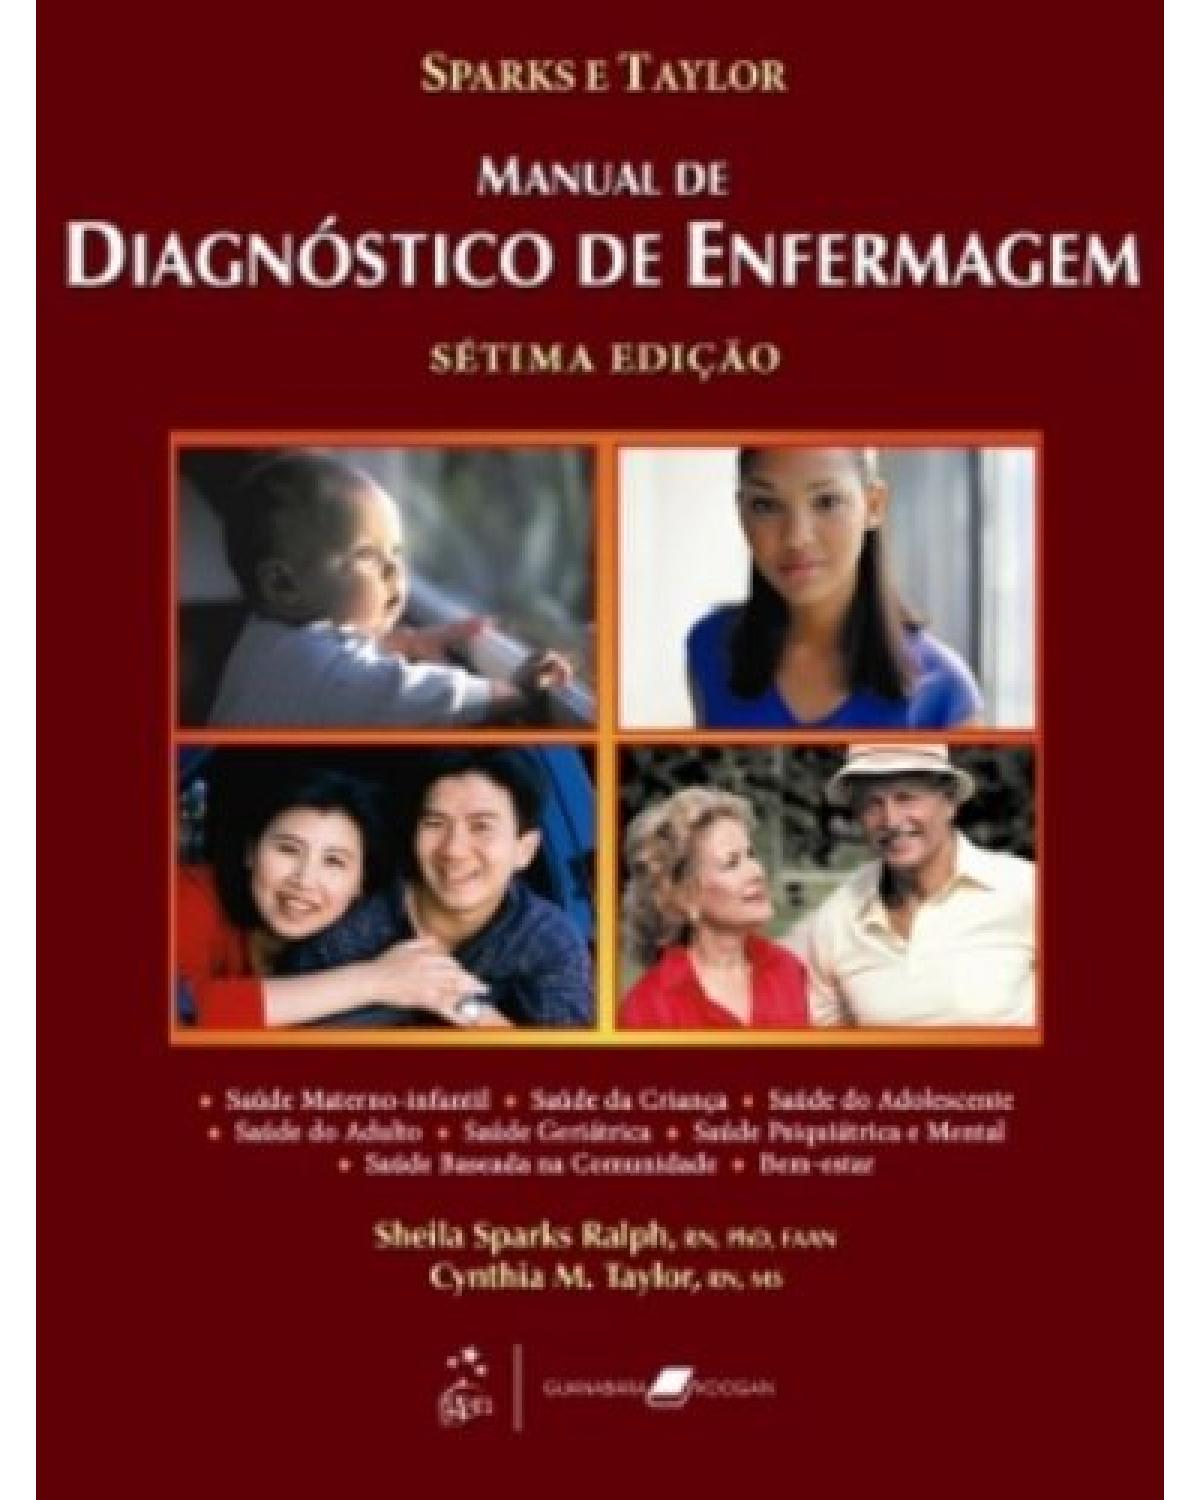 Manual de diagnóstico de enfermagem - 7ª Edição | 2009